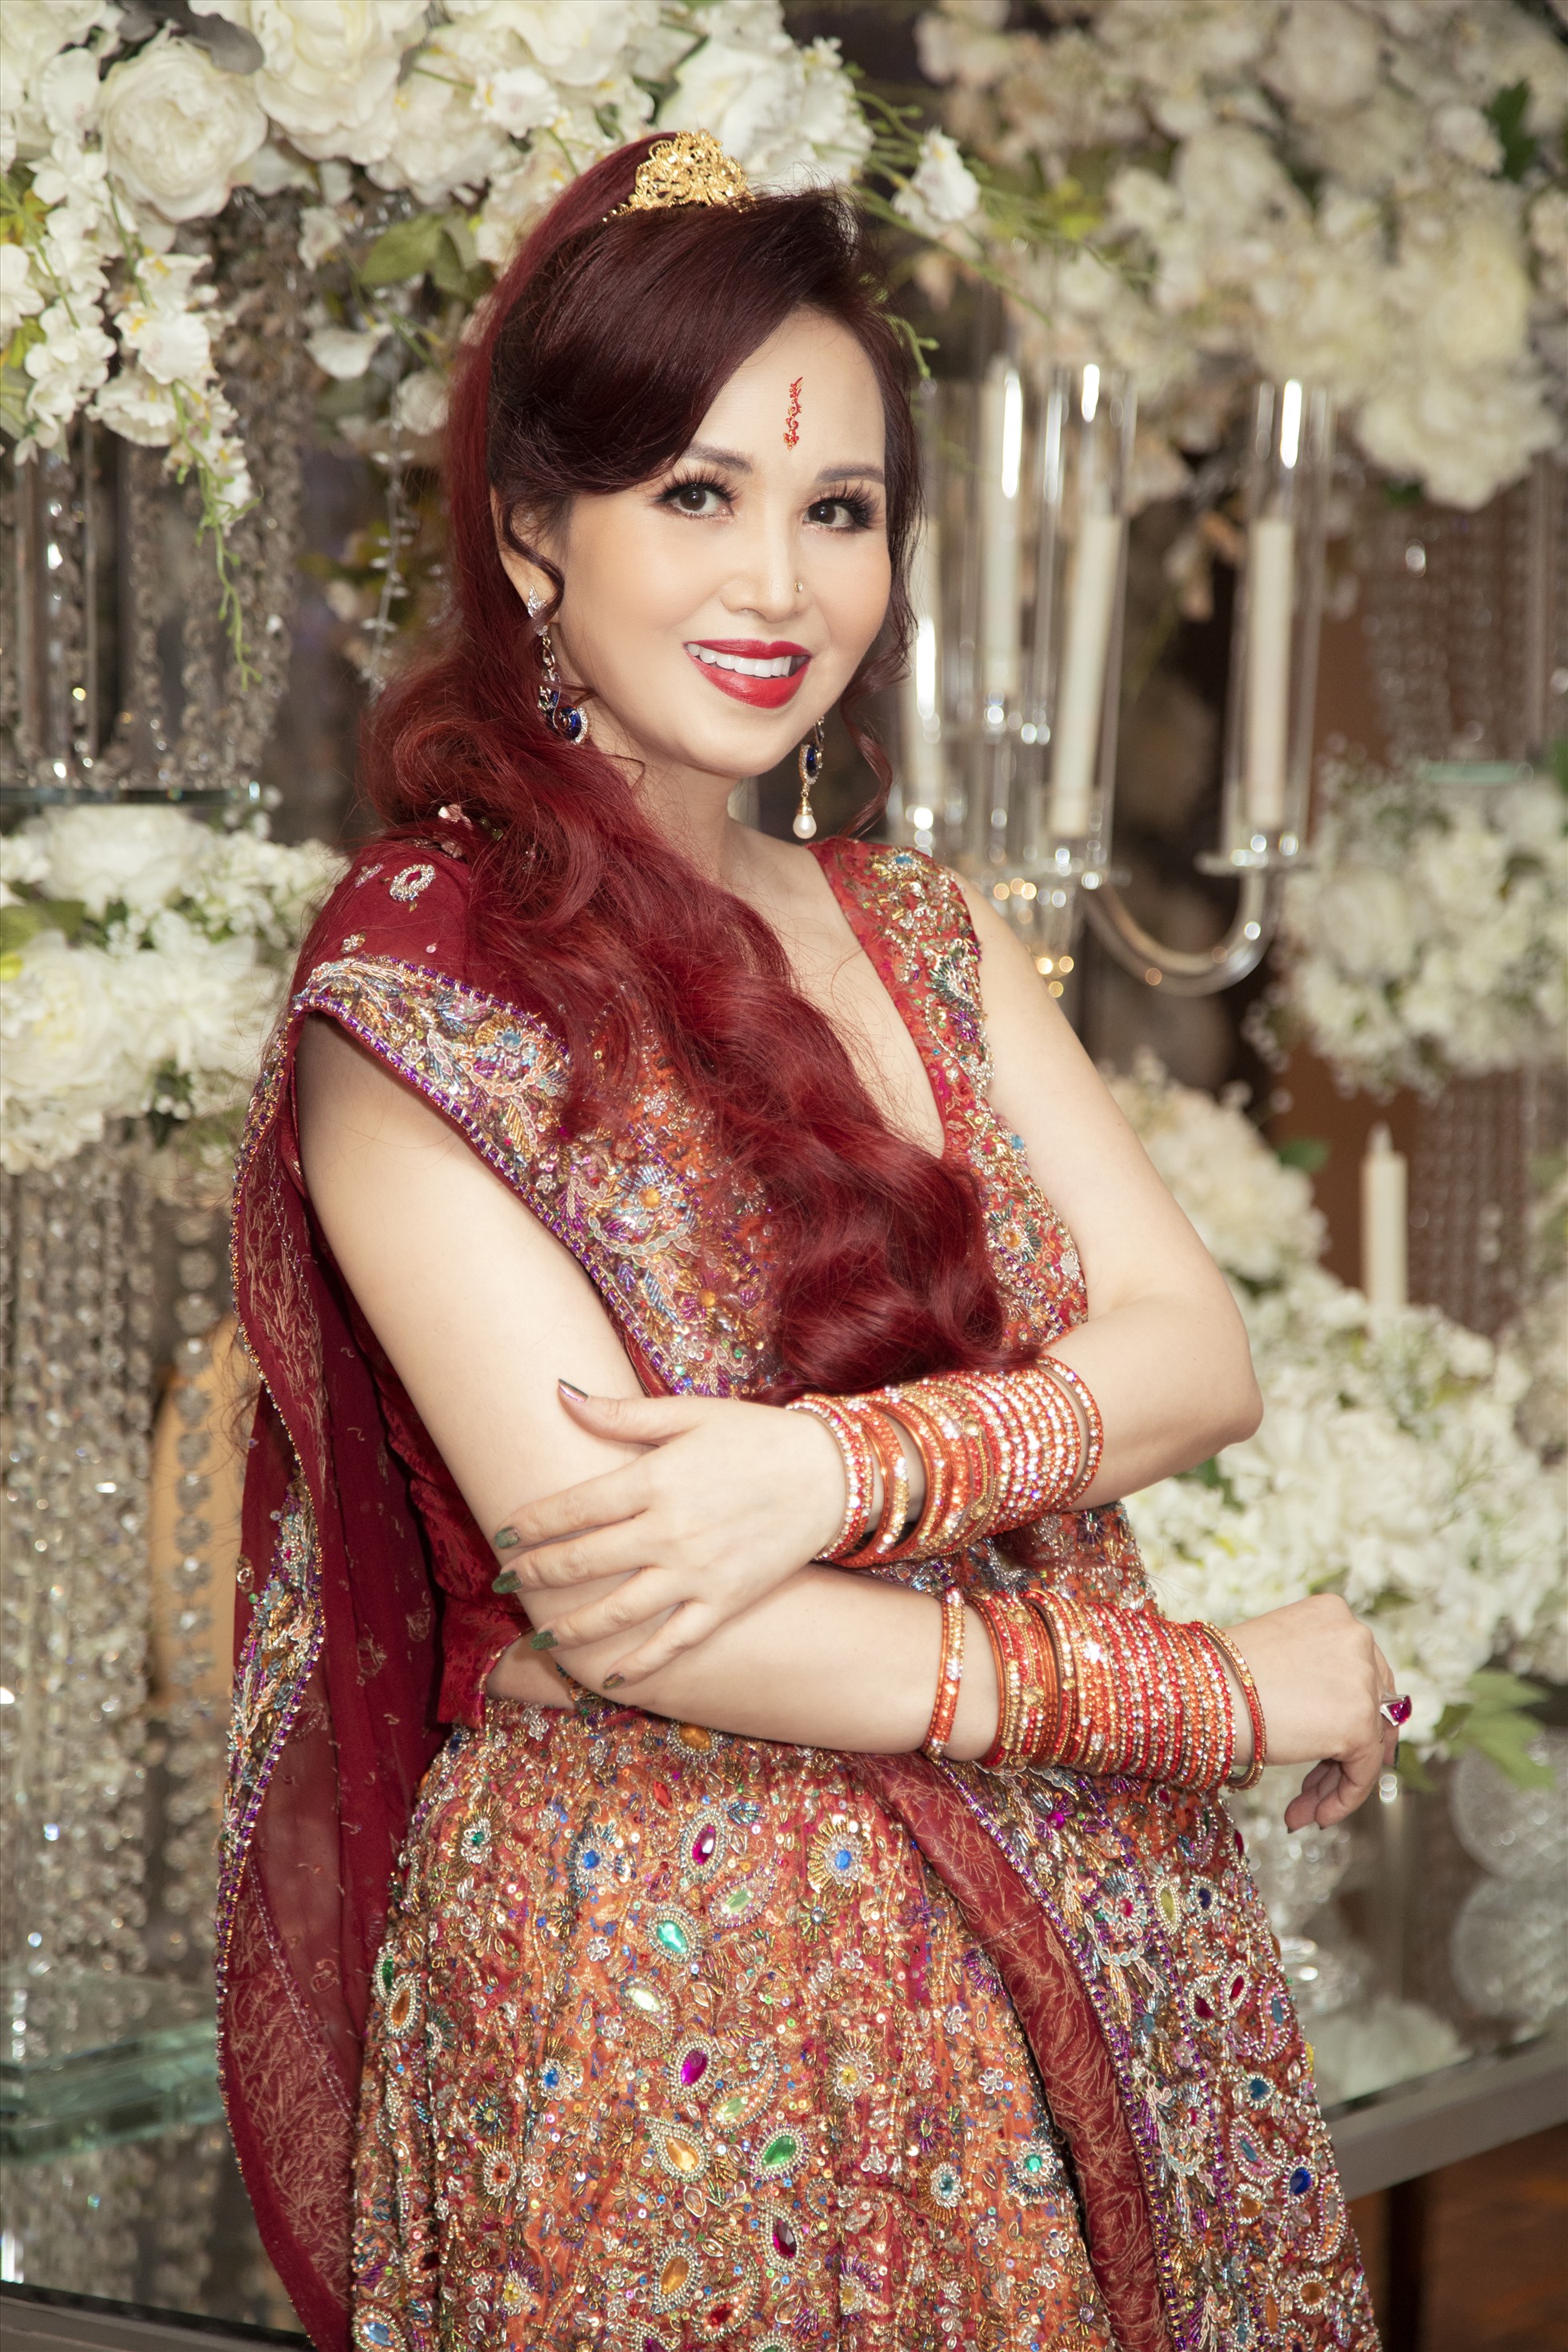 Sari Ấn Độ và nét đẹp trong văn hóa trang phục truyền thống